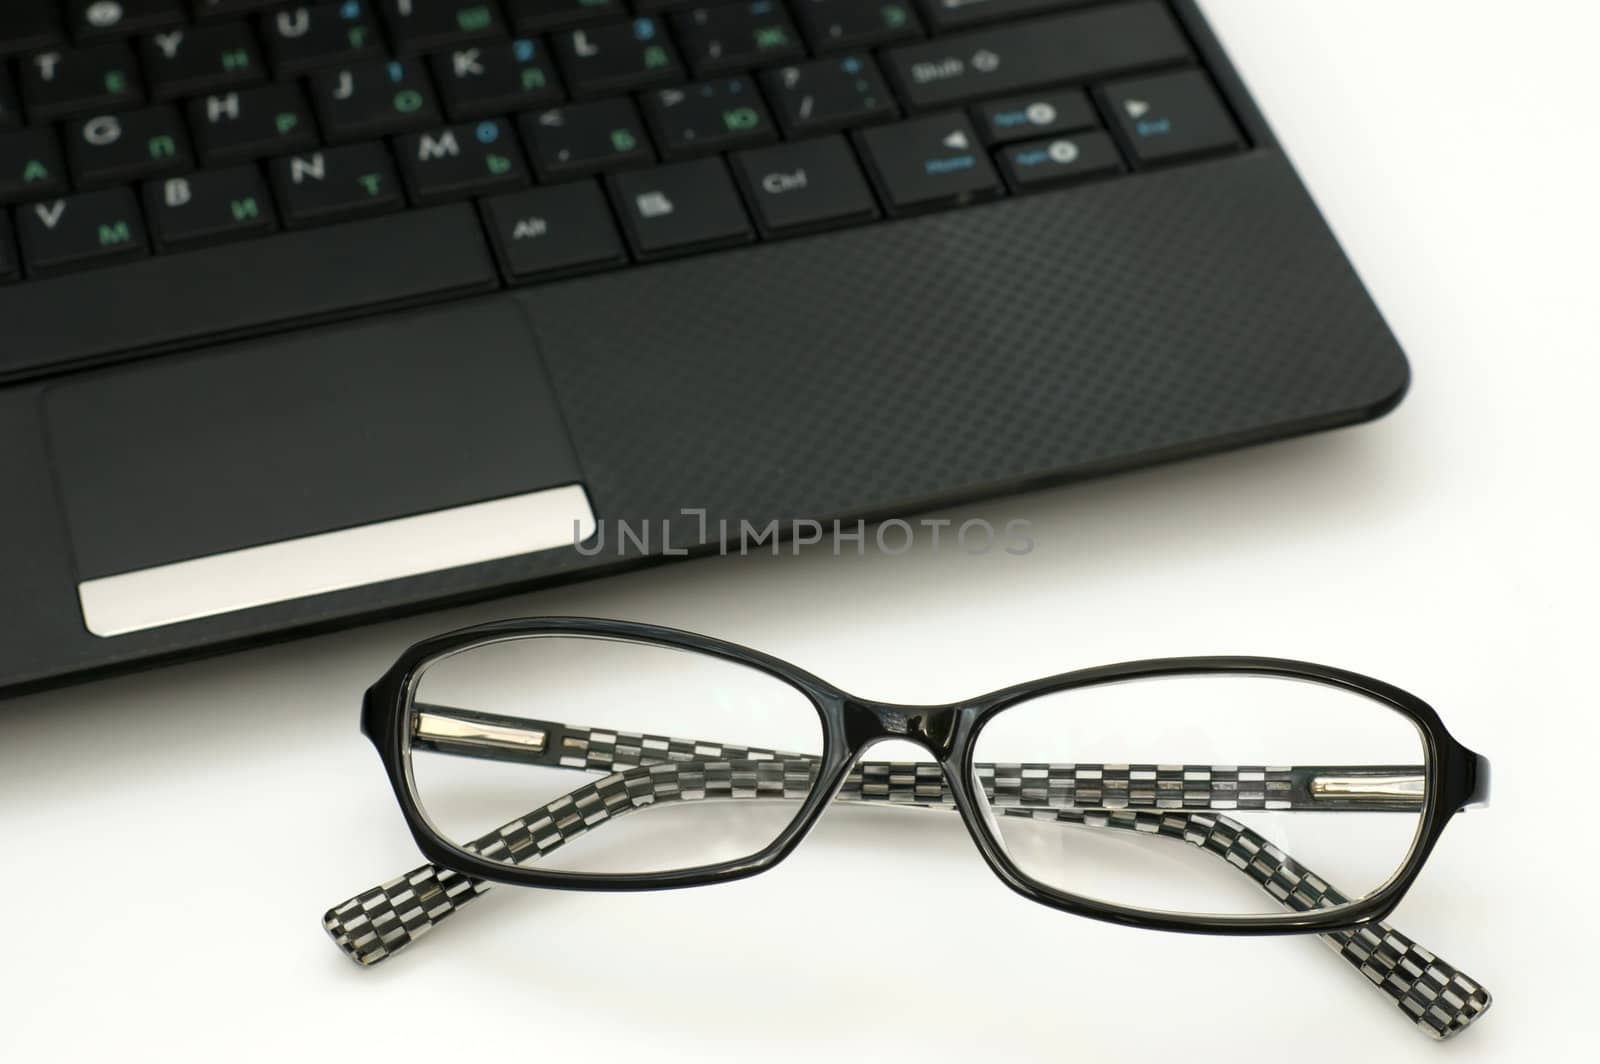 Business glasses near laptop keyboard 